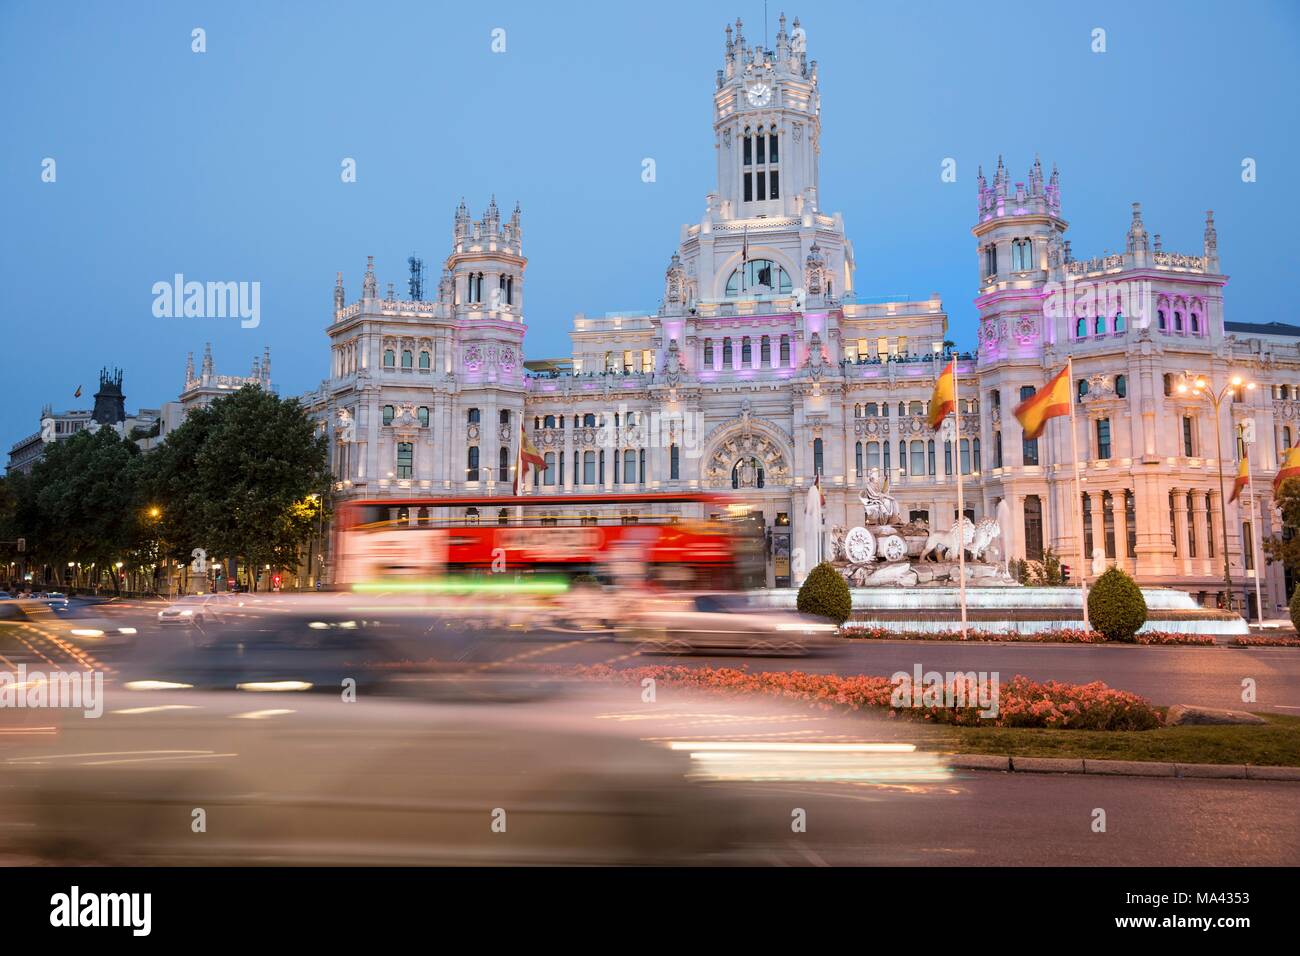 Palacio De Cibeles In Madrid Spain Stock Photo 178340543